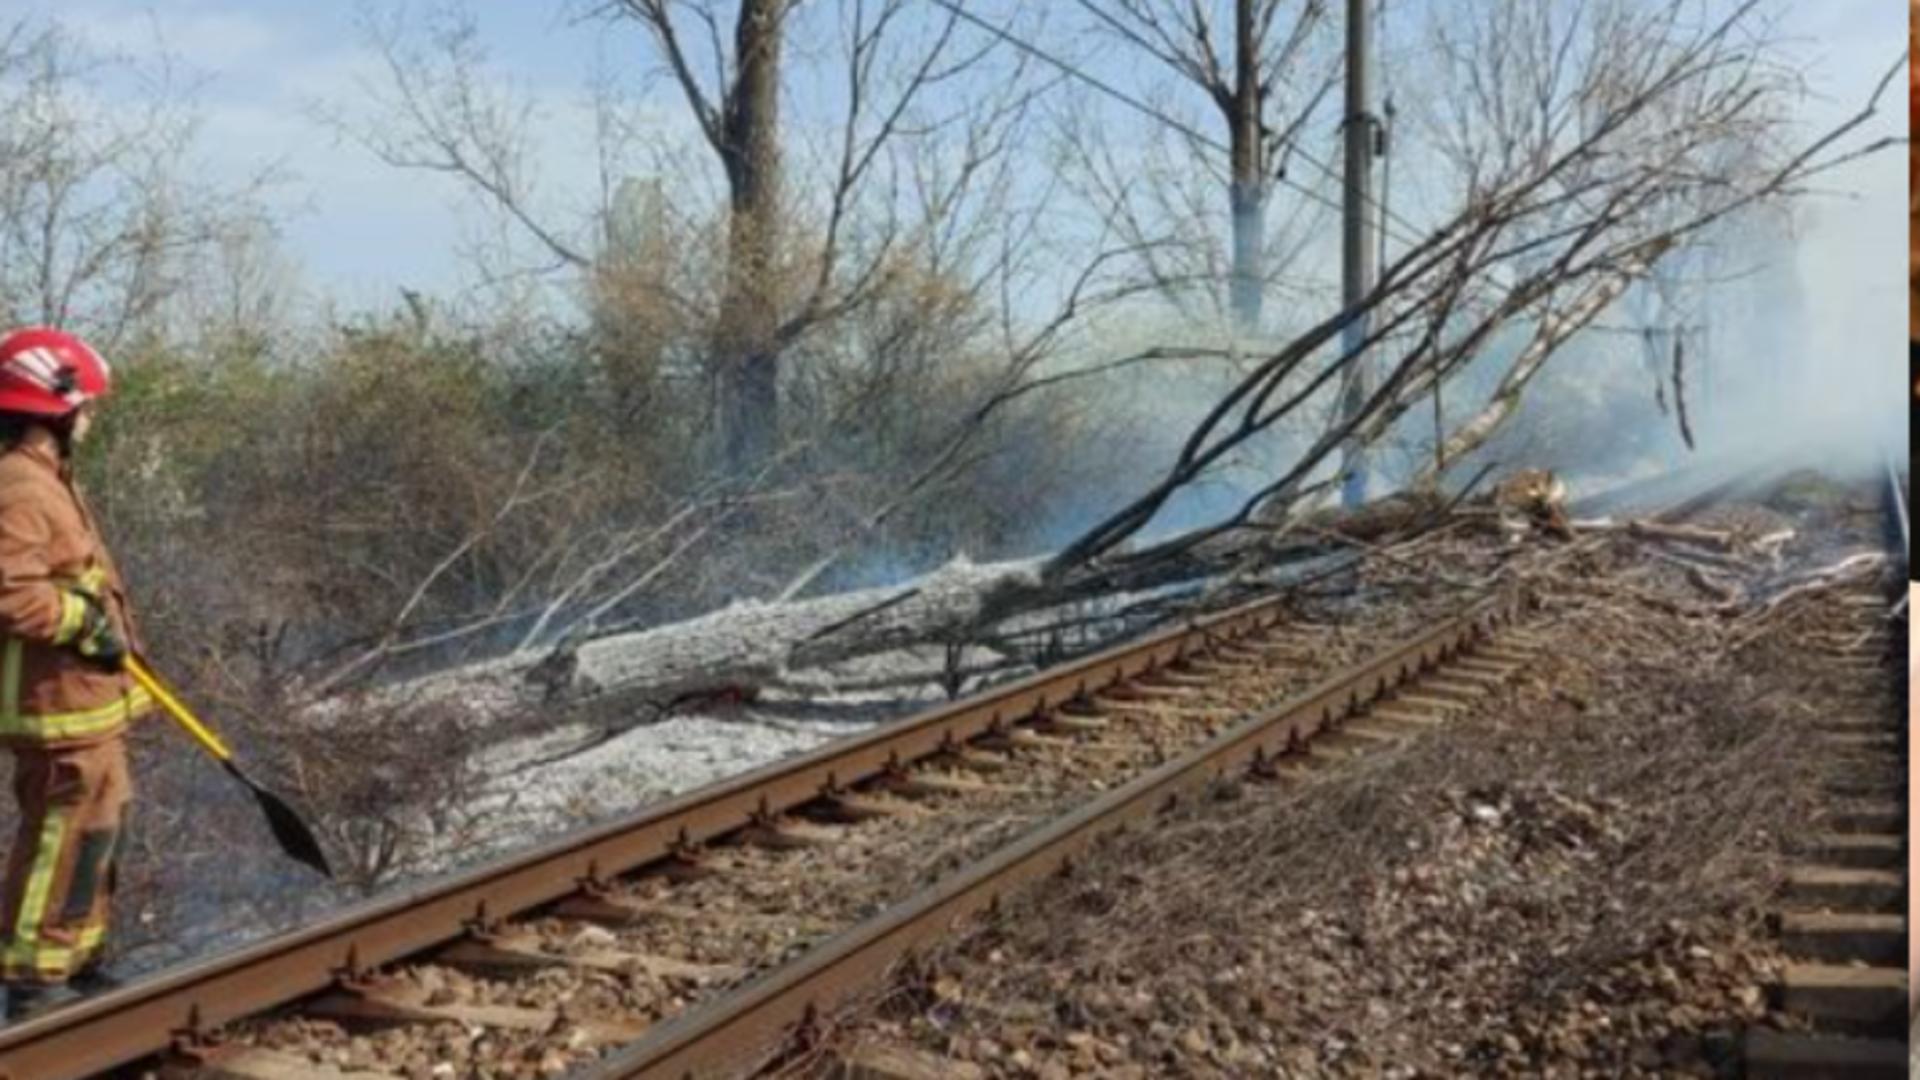 Circulaţie feroviară, oprită temporar între Ploieşti Sud şi Buzău din cauza unui copac căzut pe linie și a unui incendiu izbucnit în apropiere/ Captură foto